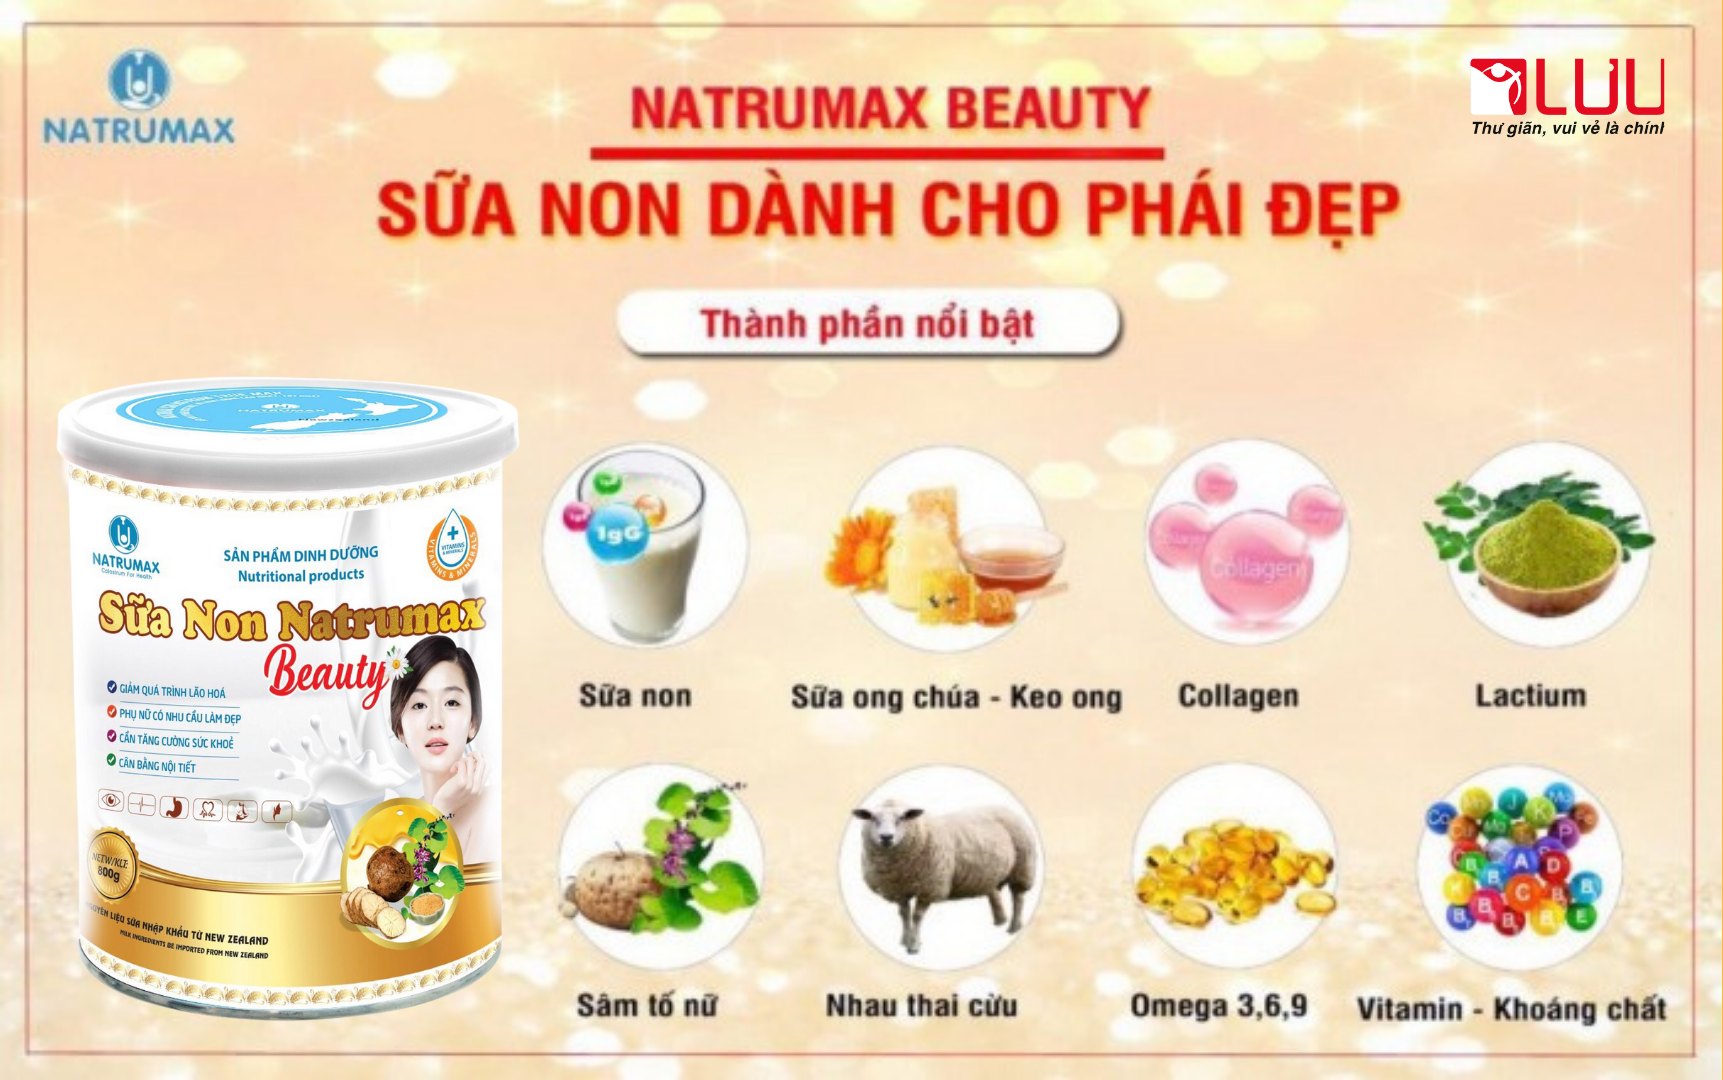 Thành phần chất lượng cao trong sữa non Natrumax Beauty